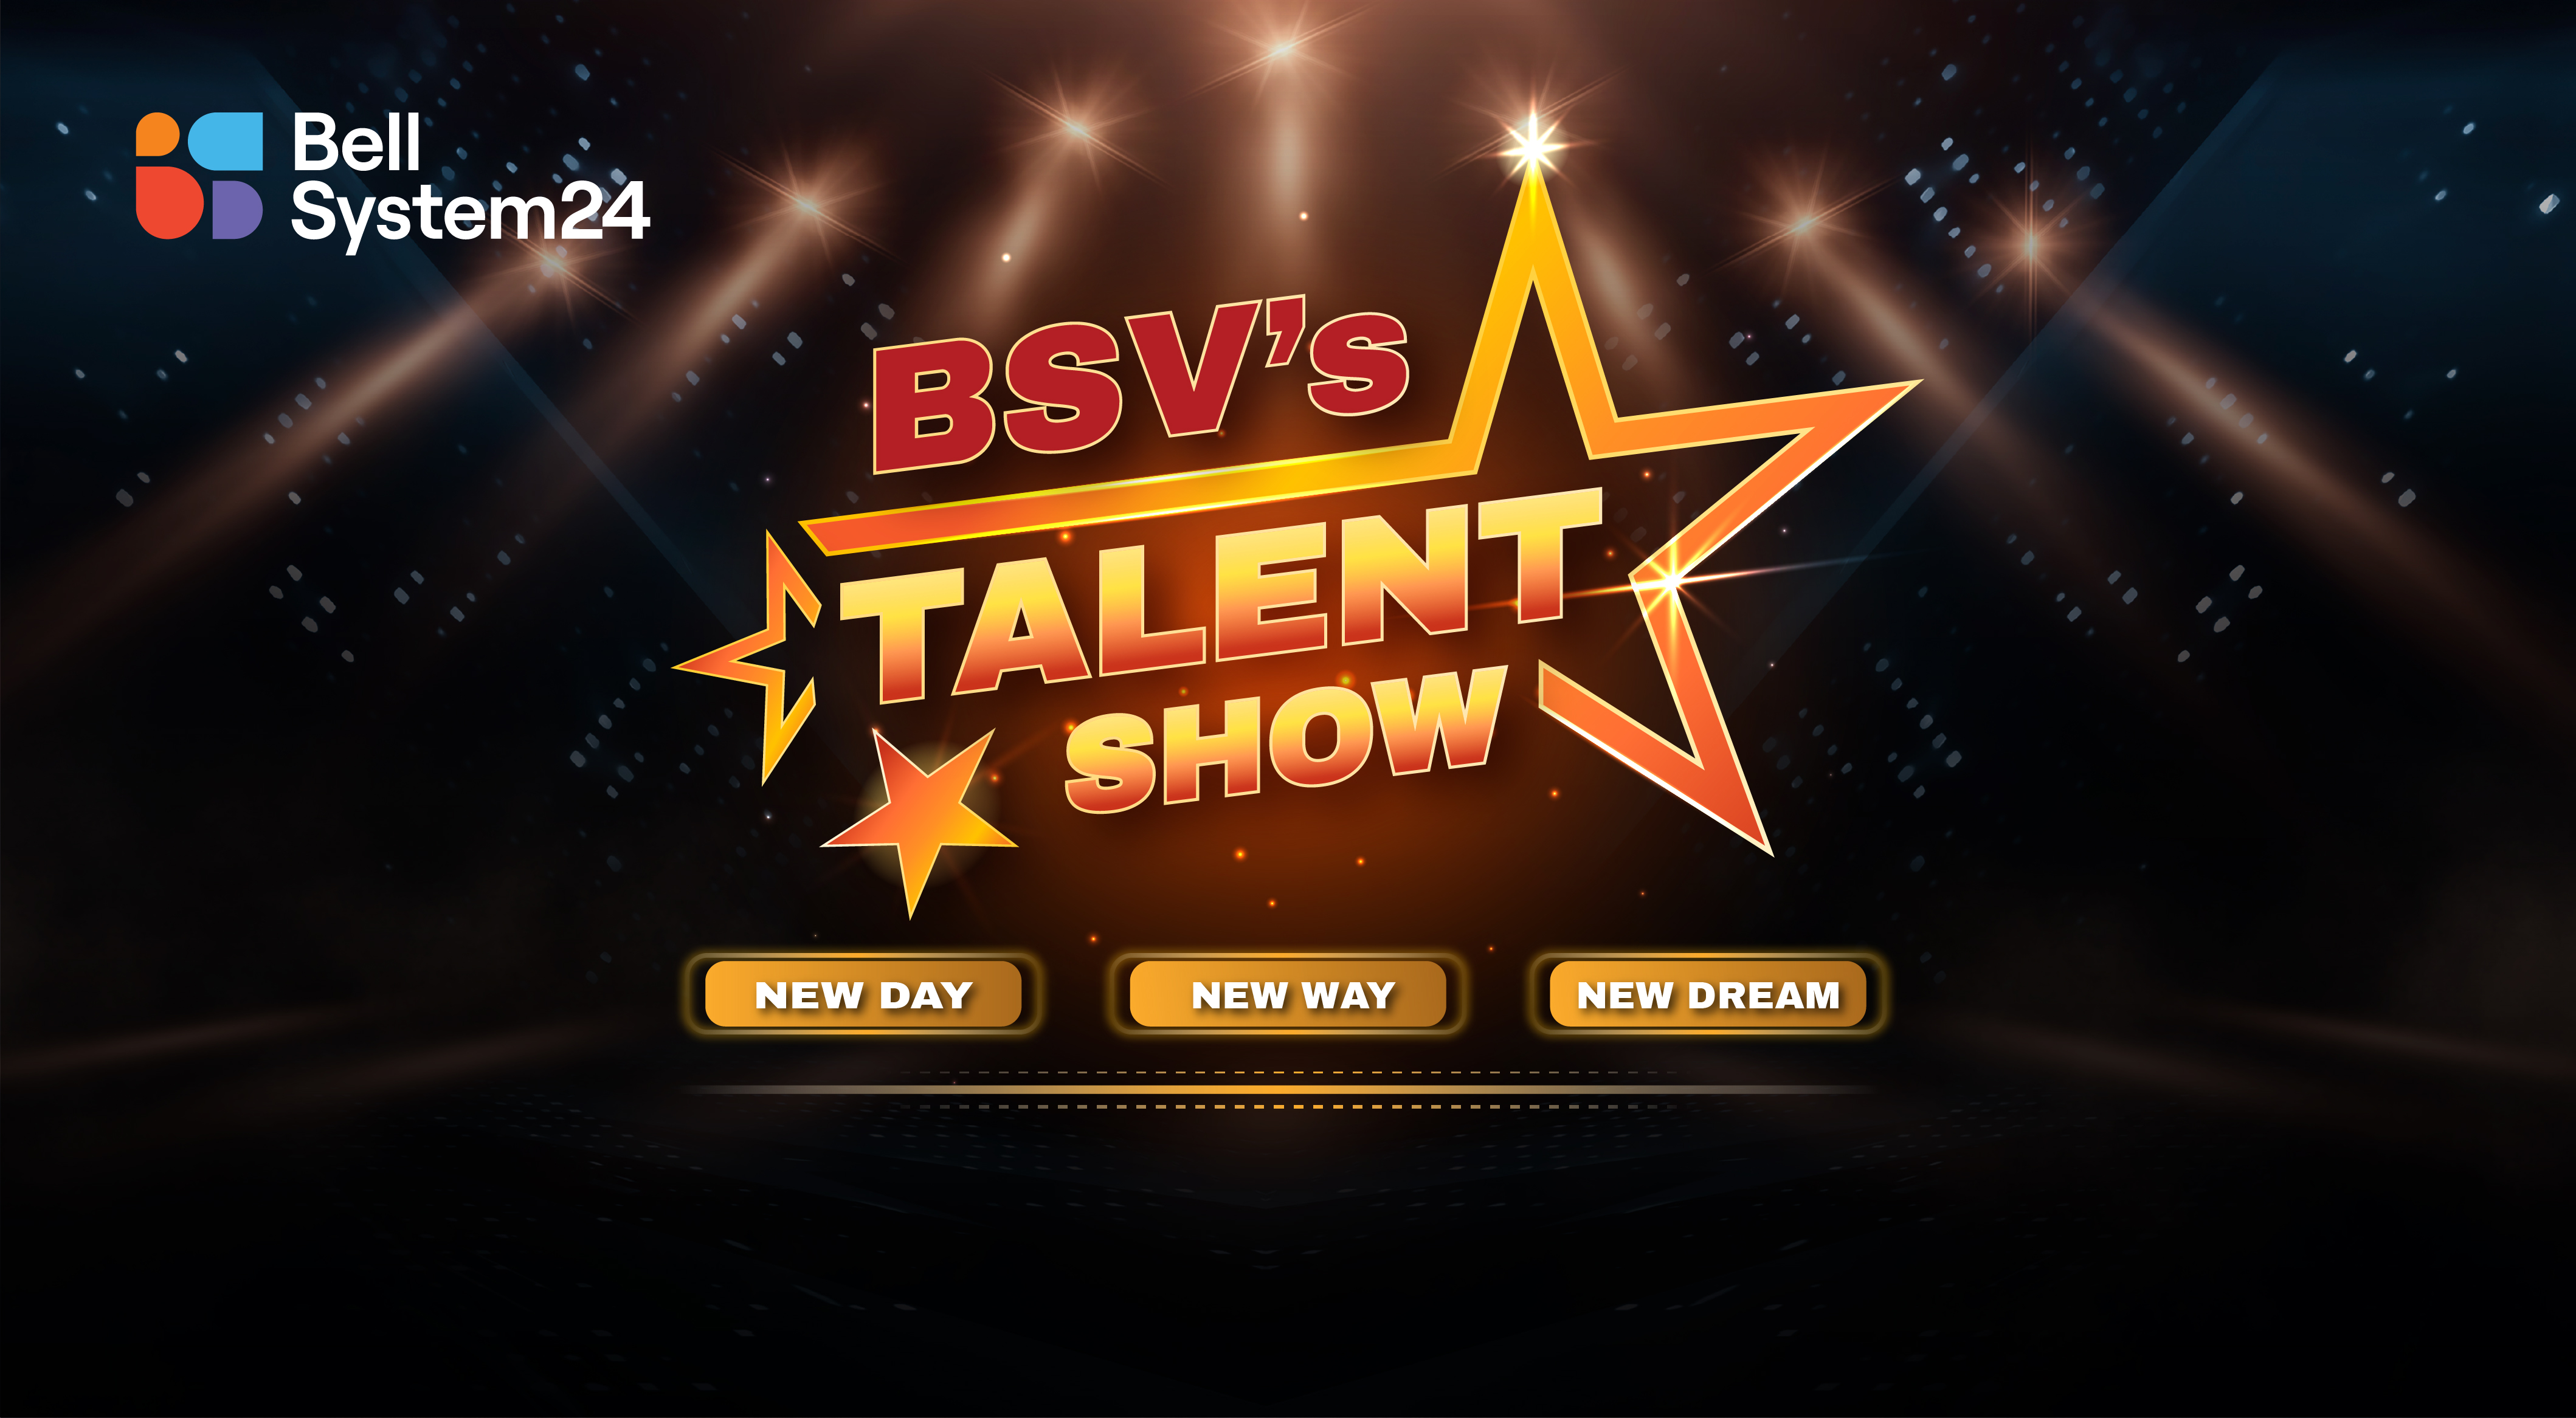 BSV talent show